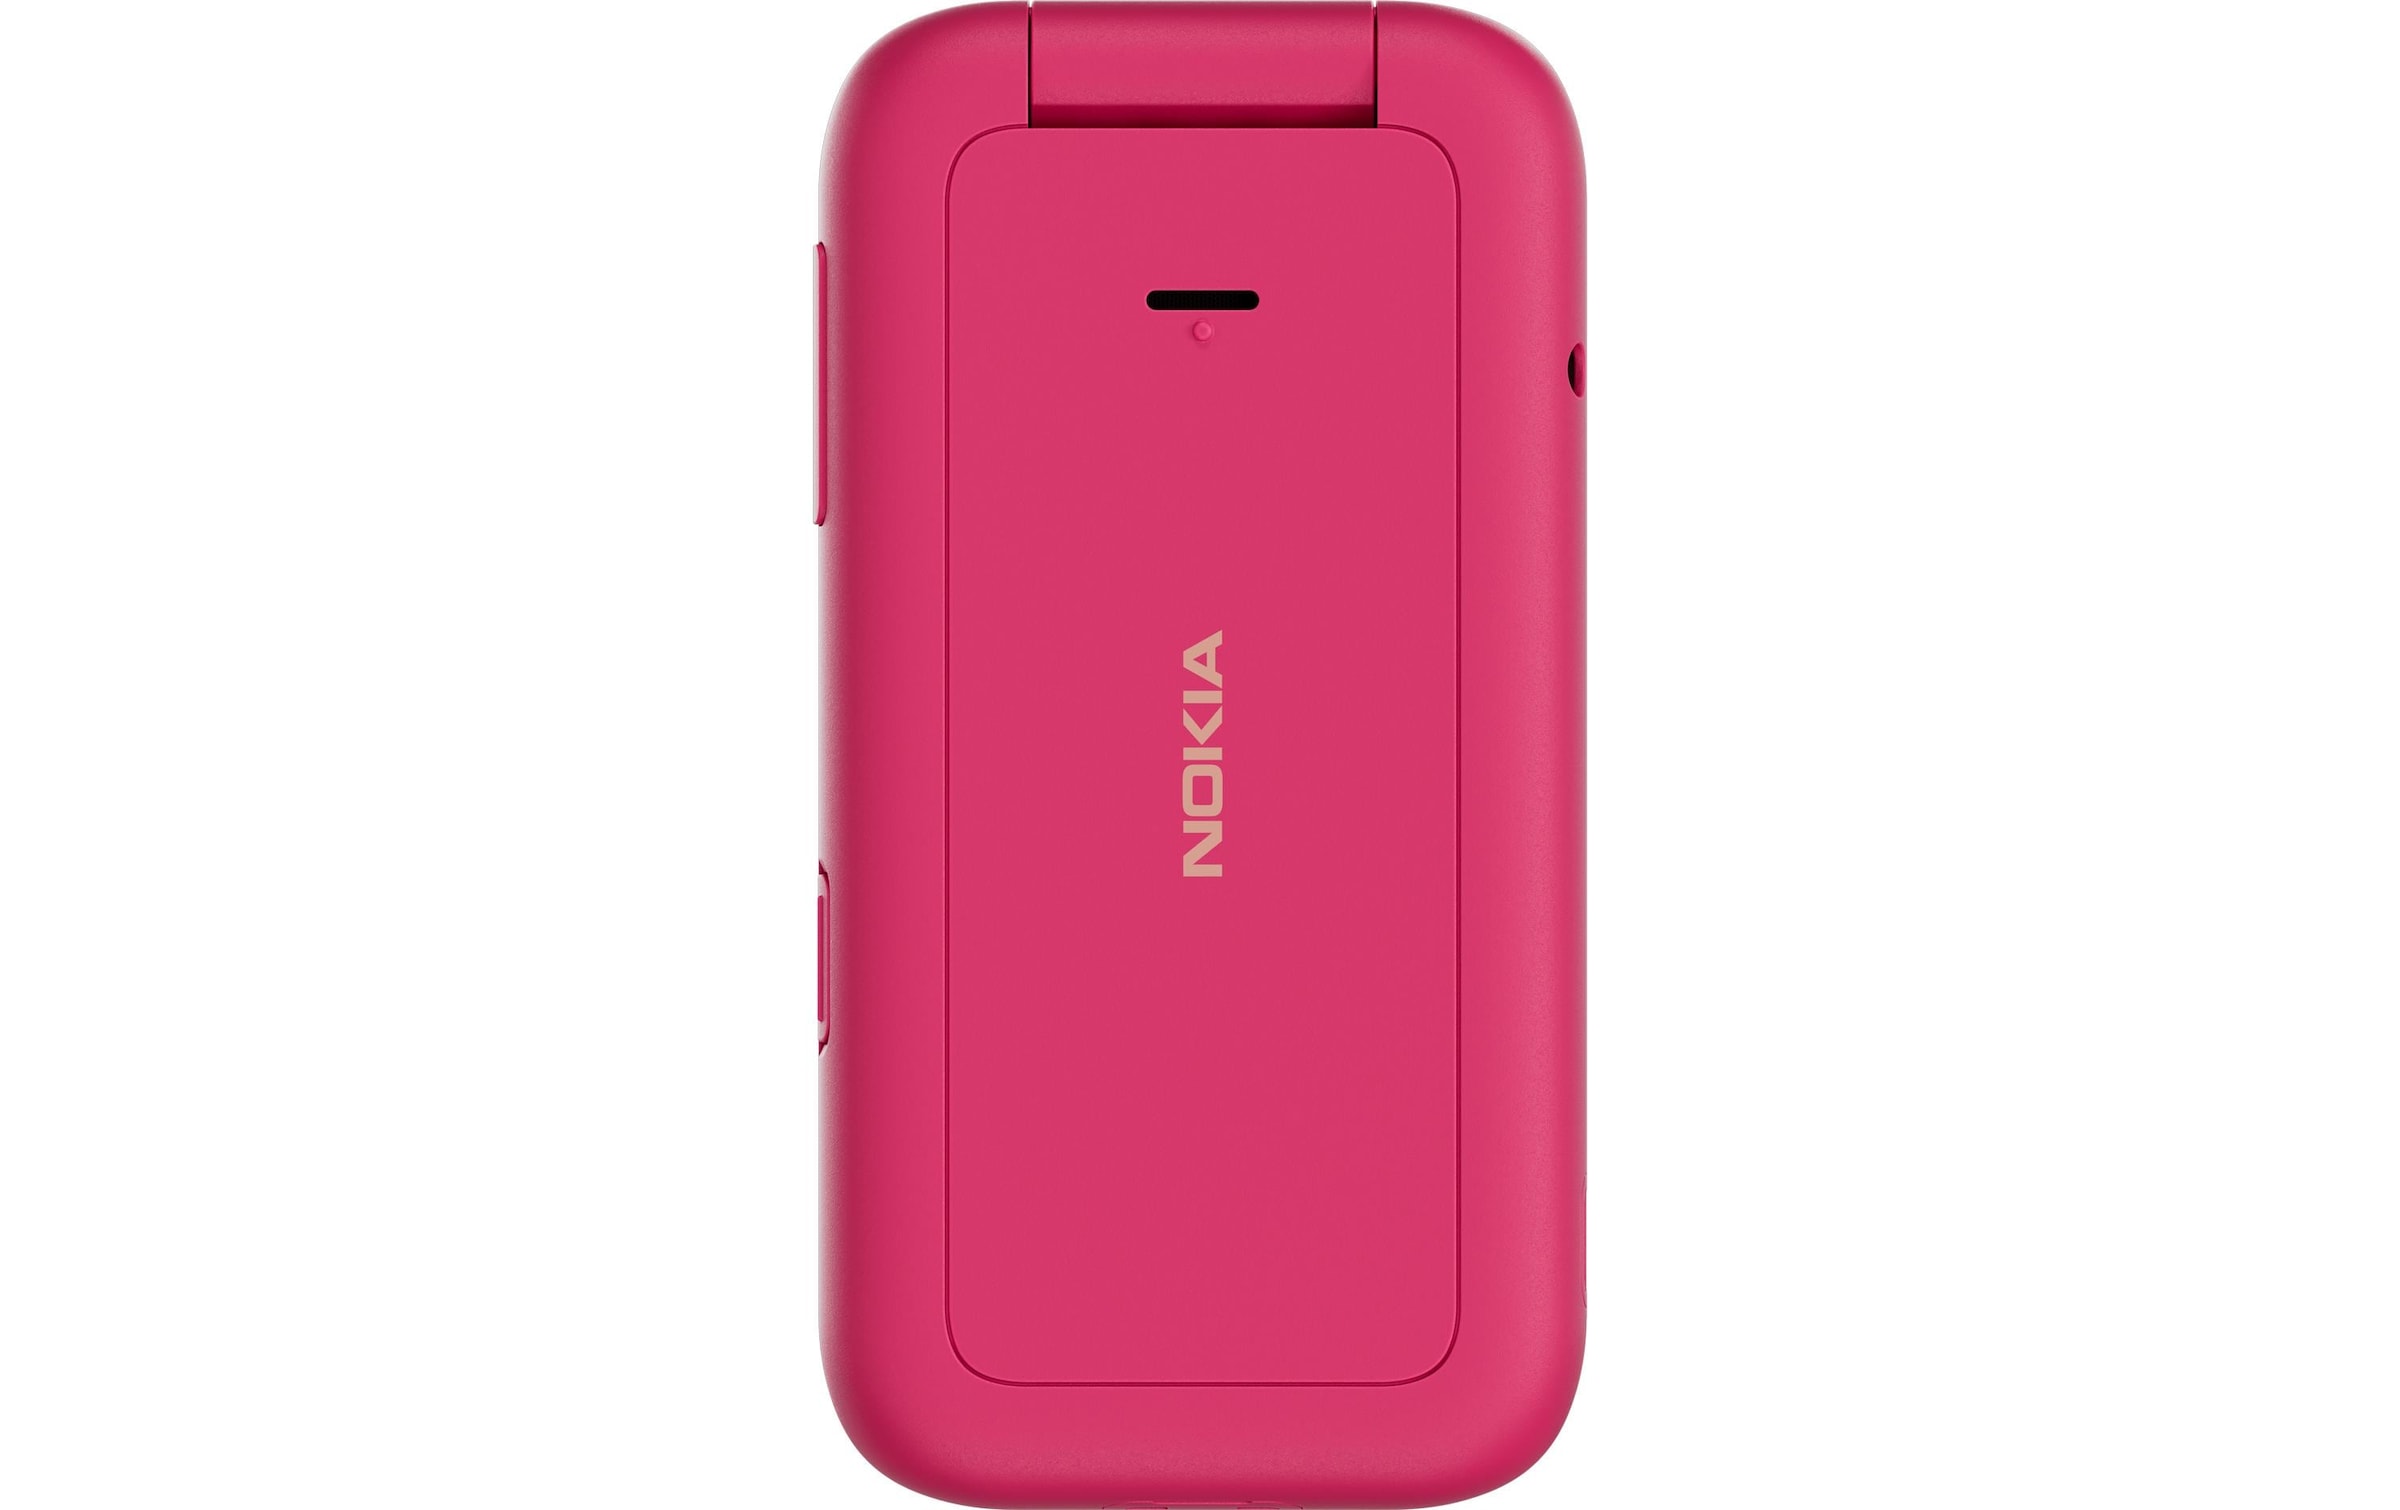 Smartphone »2660 Flip Pink«, Schwarz, 7,08 cm/2,8 Zoll, 128 GB Speicherplatz, 3 MP Kamera